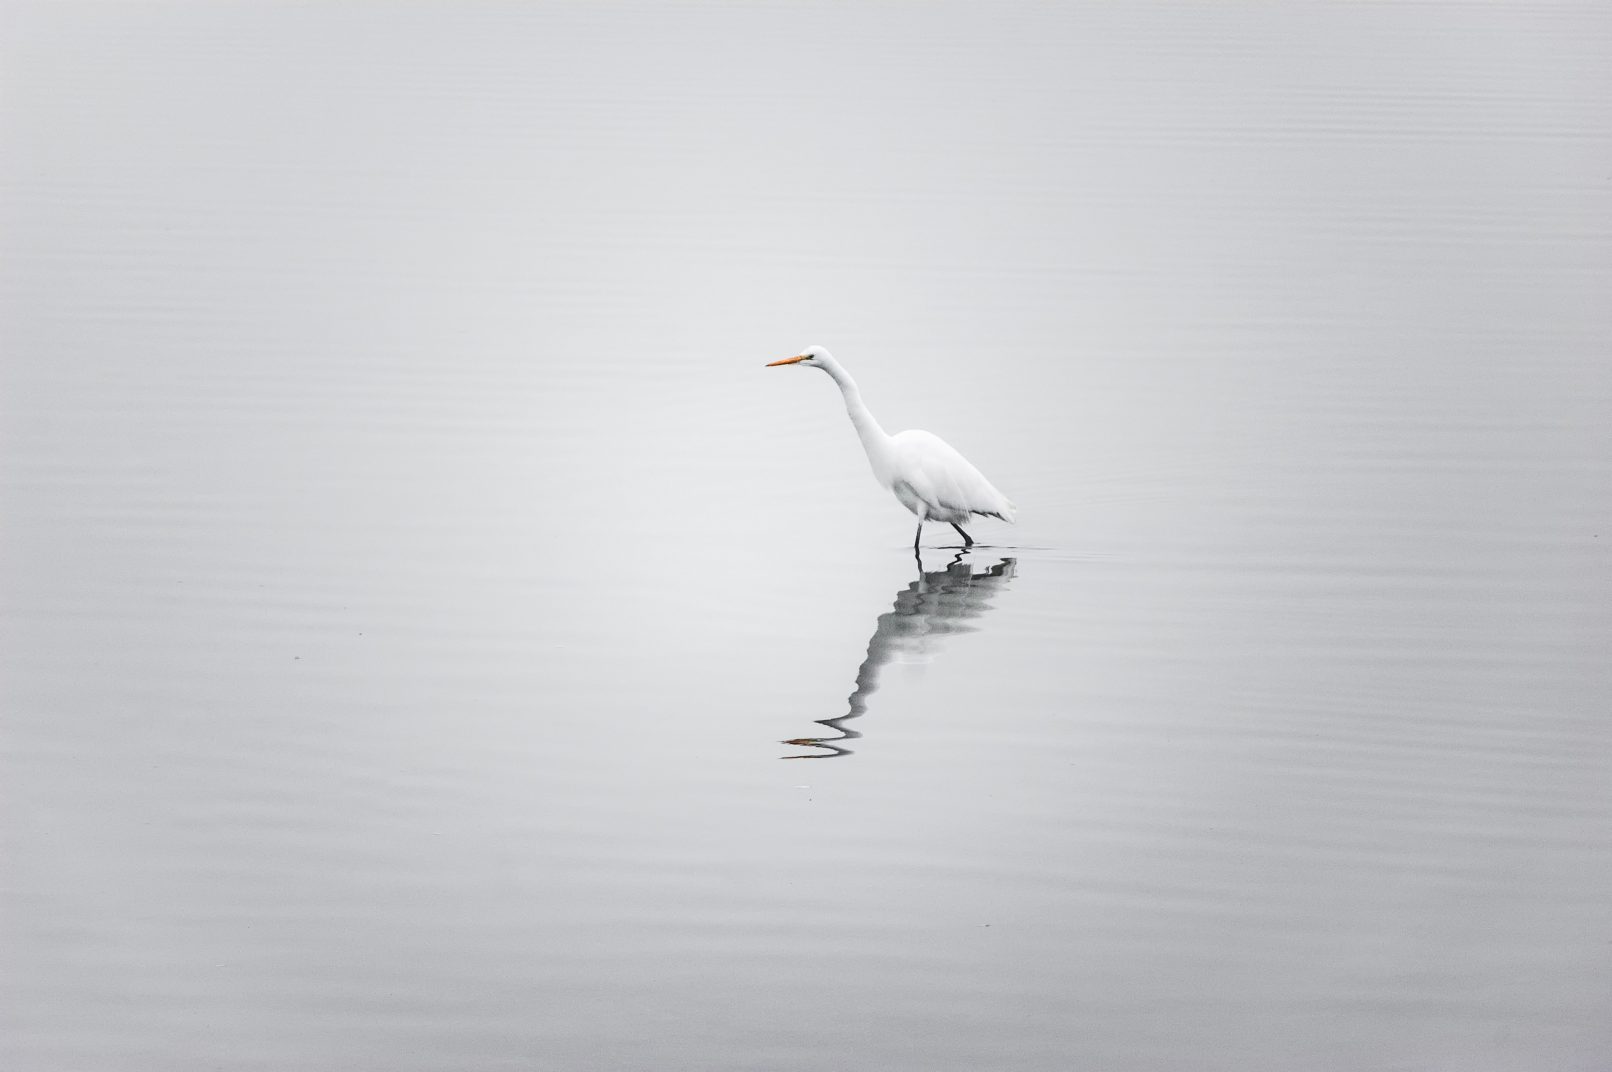 White bird wading through water